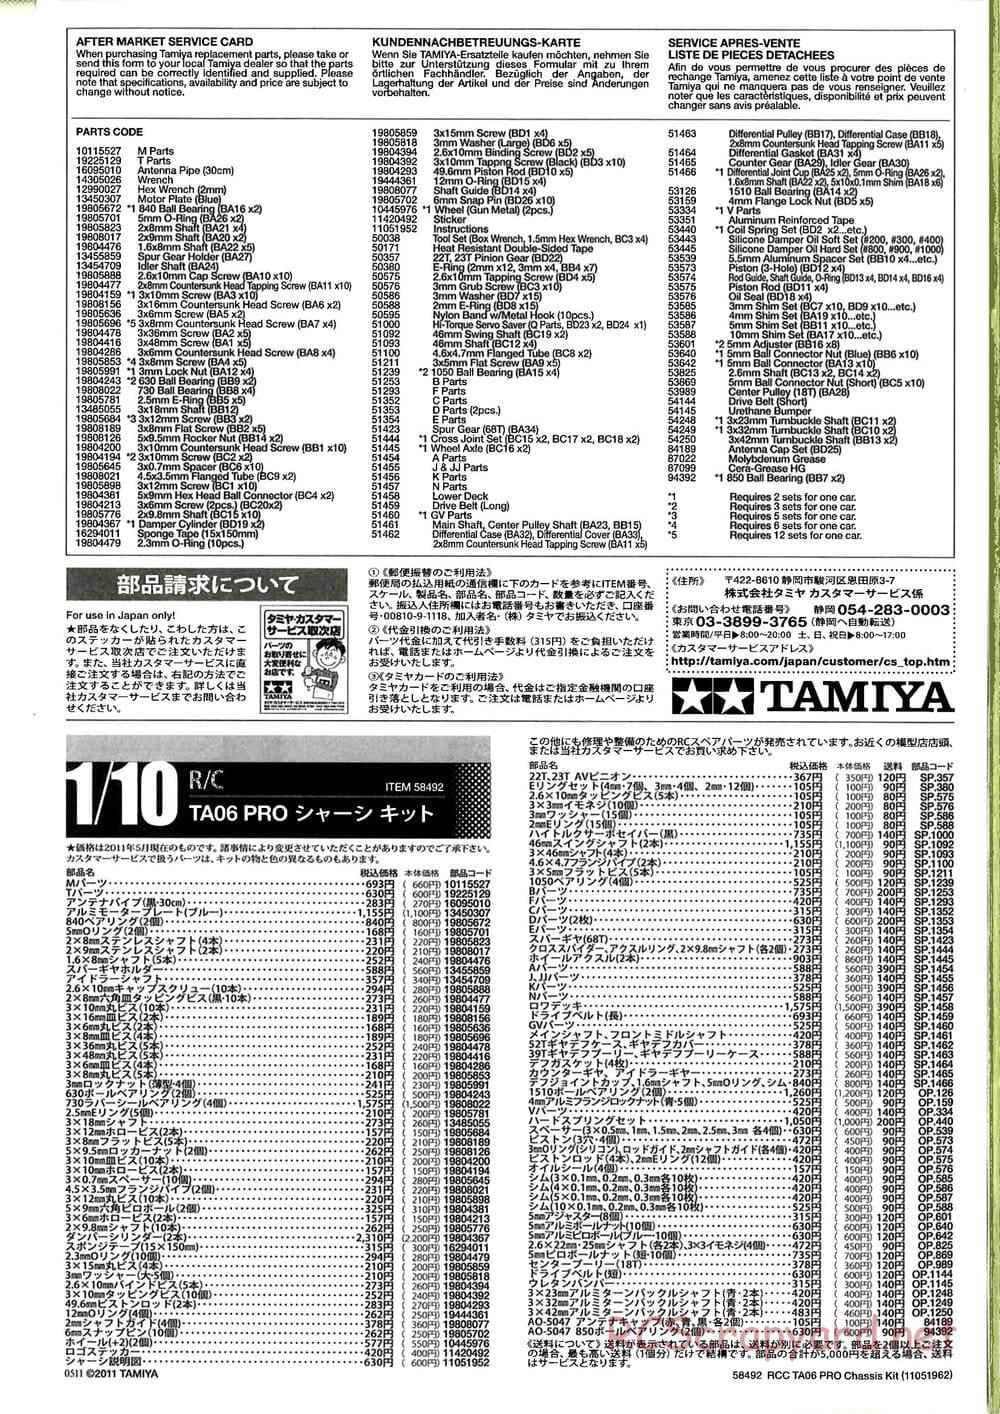 Tamiya - TA06 Pro Chassis - Manual - Page 29